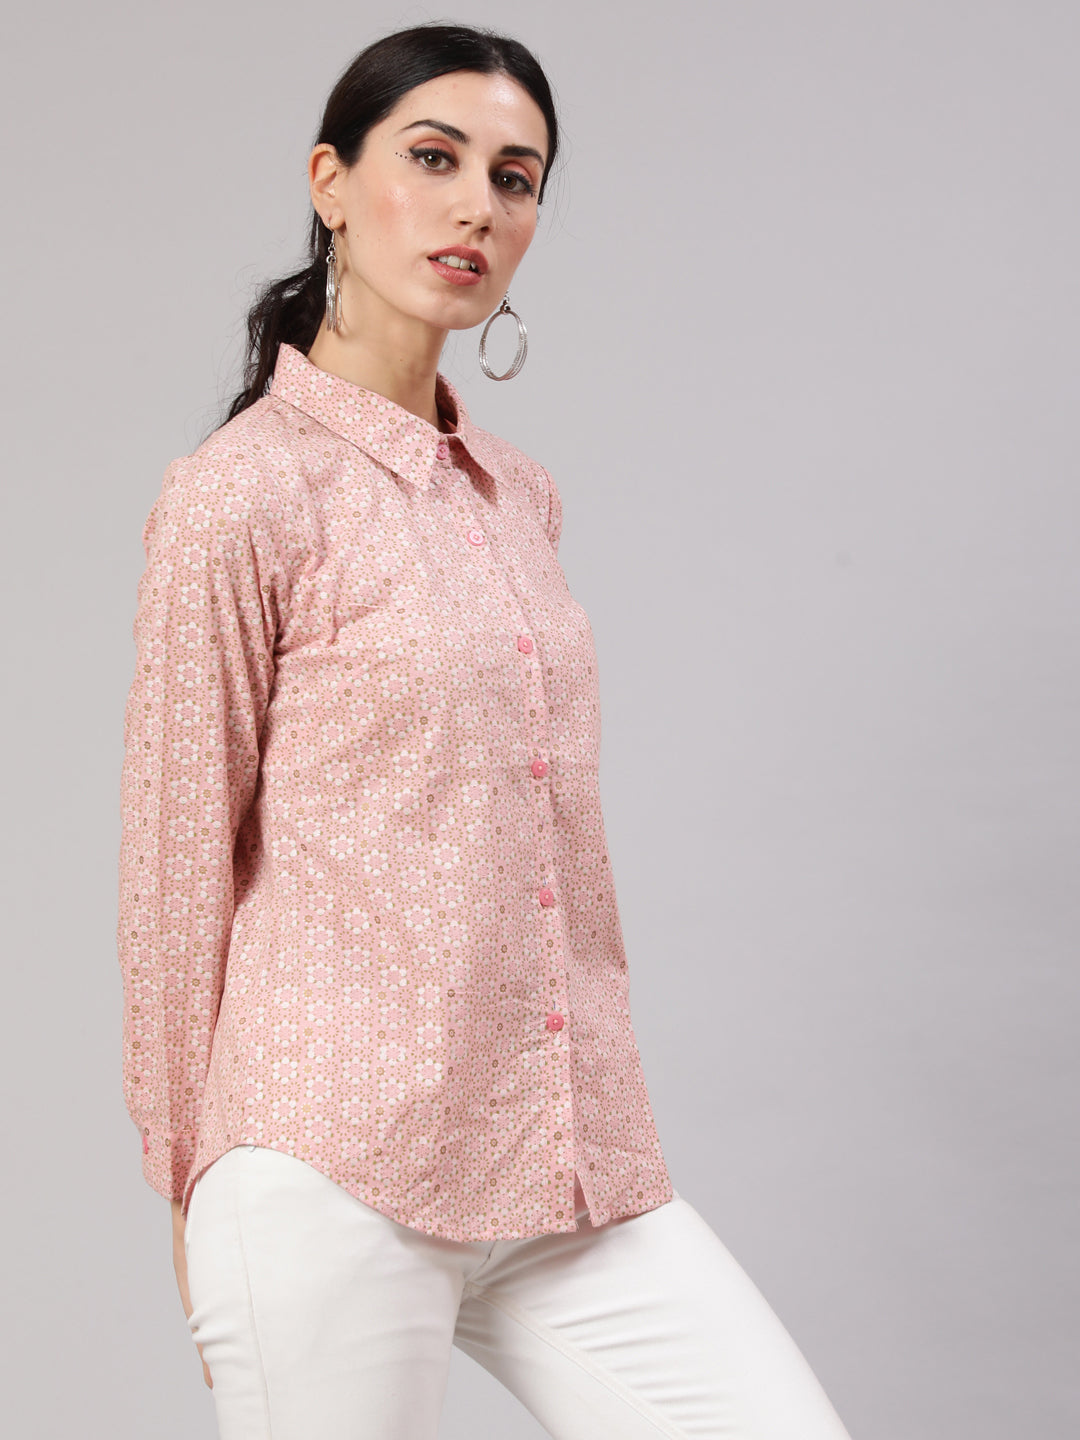 Women's Pink Printed Shirt - Aks